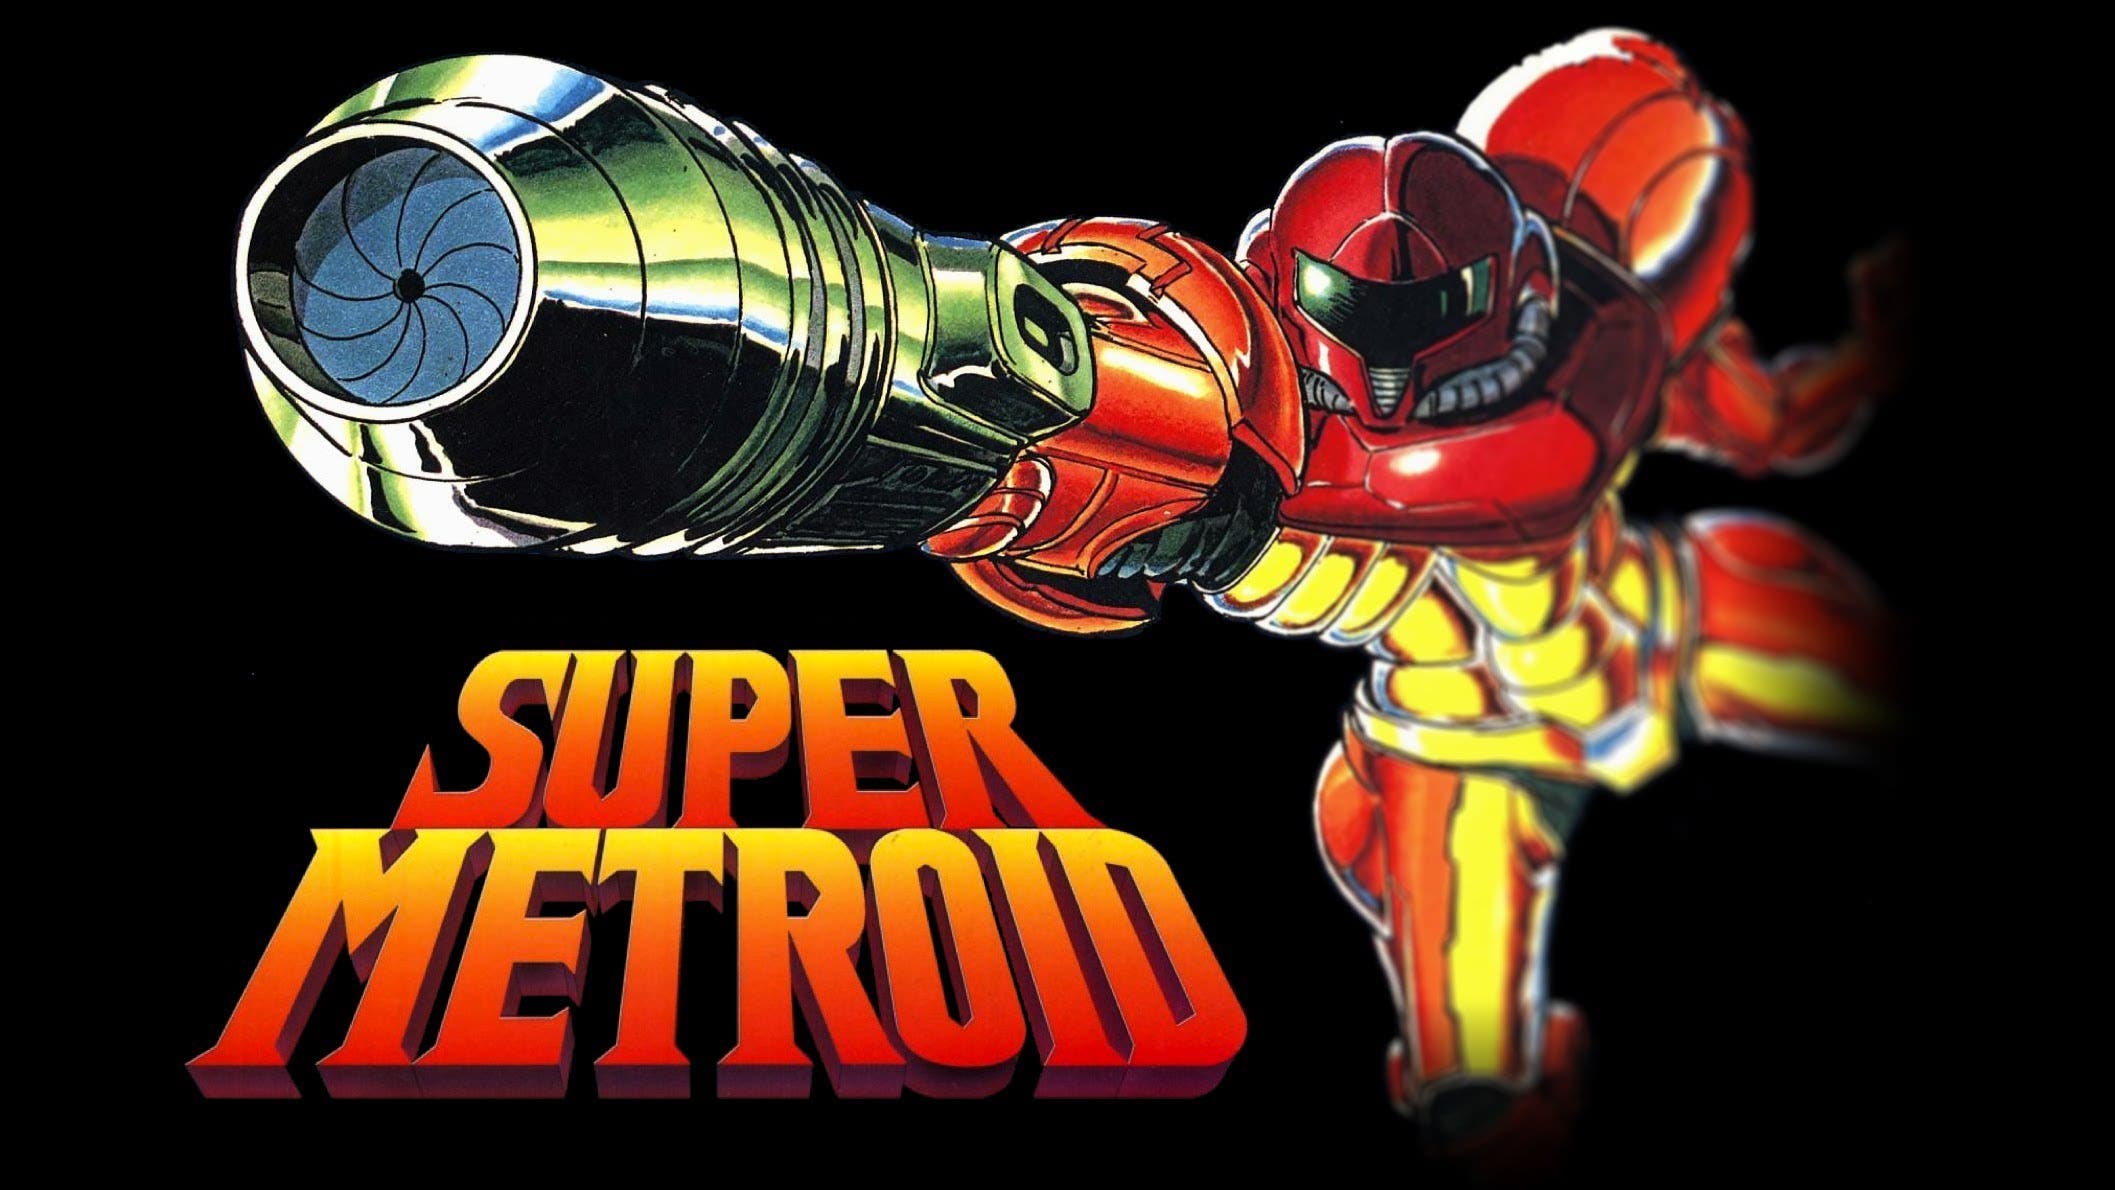 Super Metroid toma el primer puesto en la lista de los más descargados de la eShop de 3DS (22/06/17)